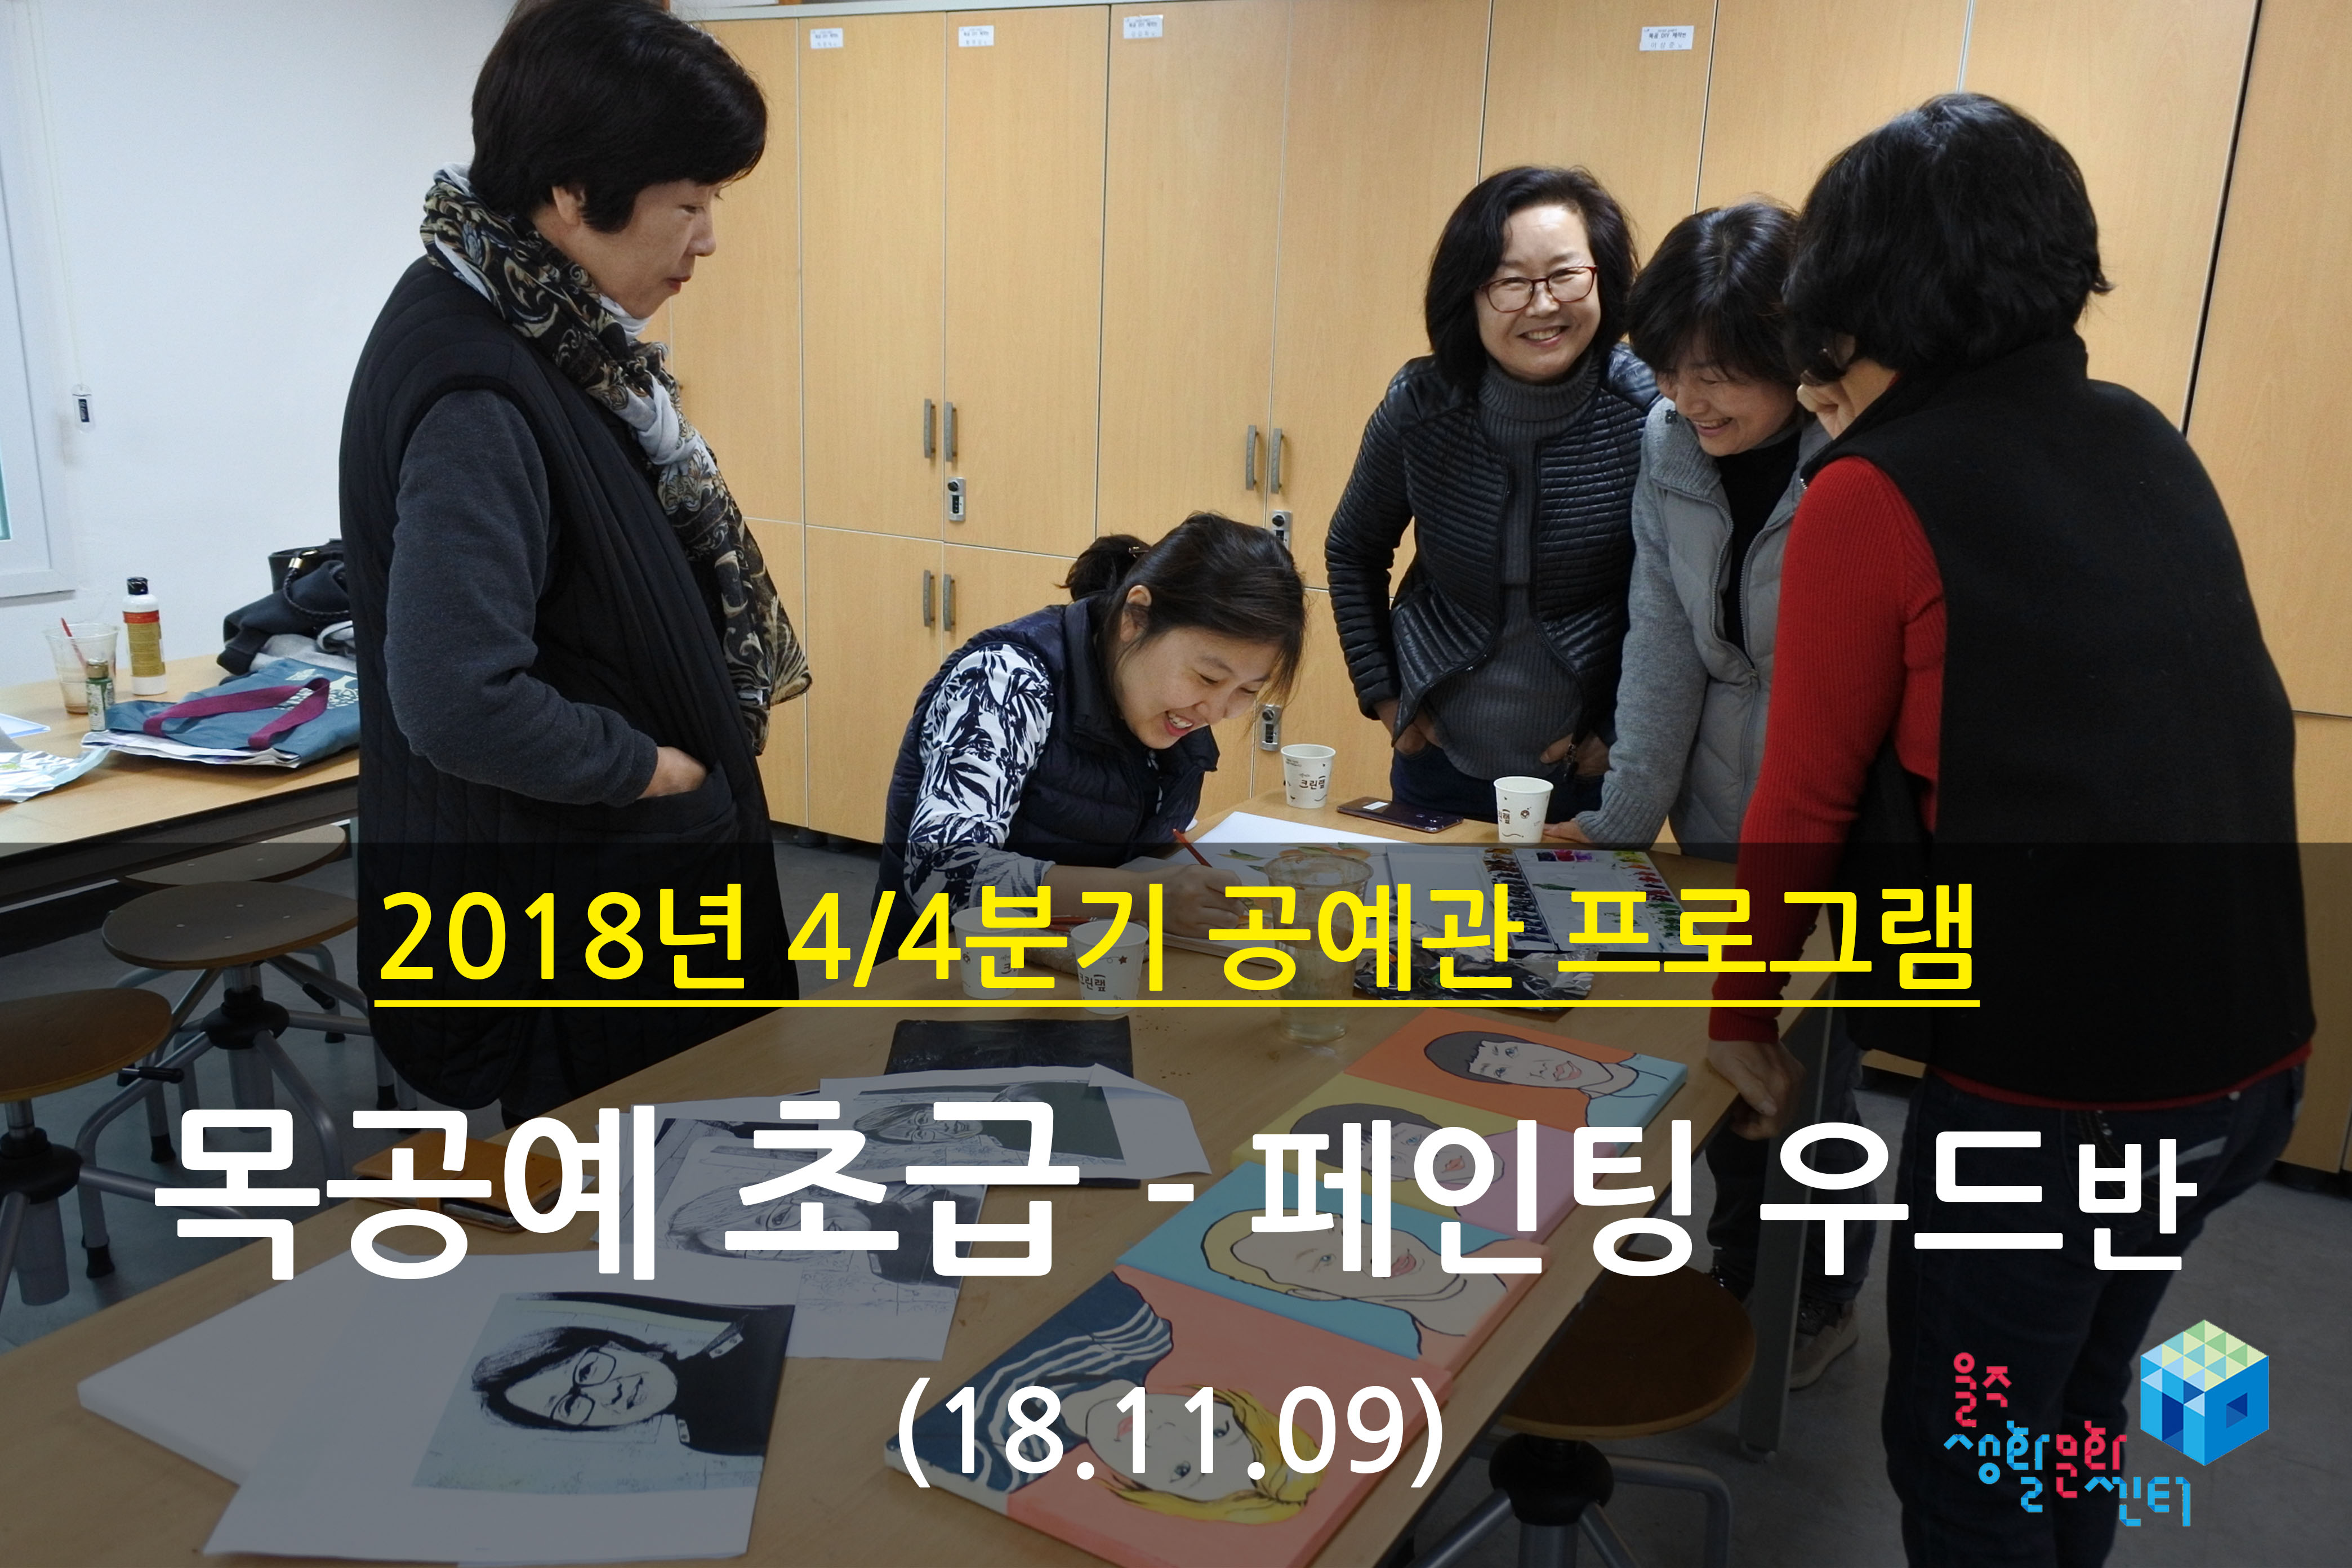 2018.11.09 _ 목공예 초급 - 페인팅우드반 _ 4/4분기 5주차 수업